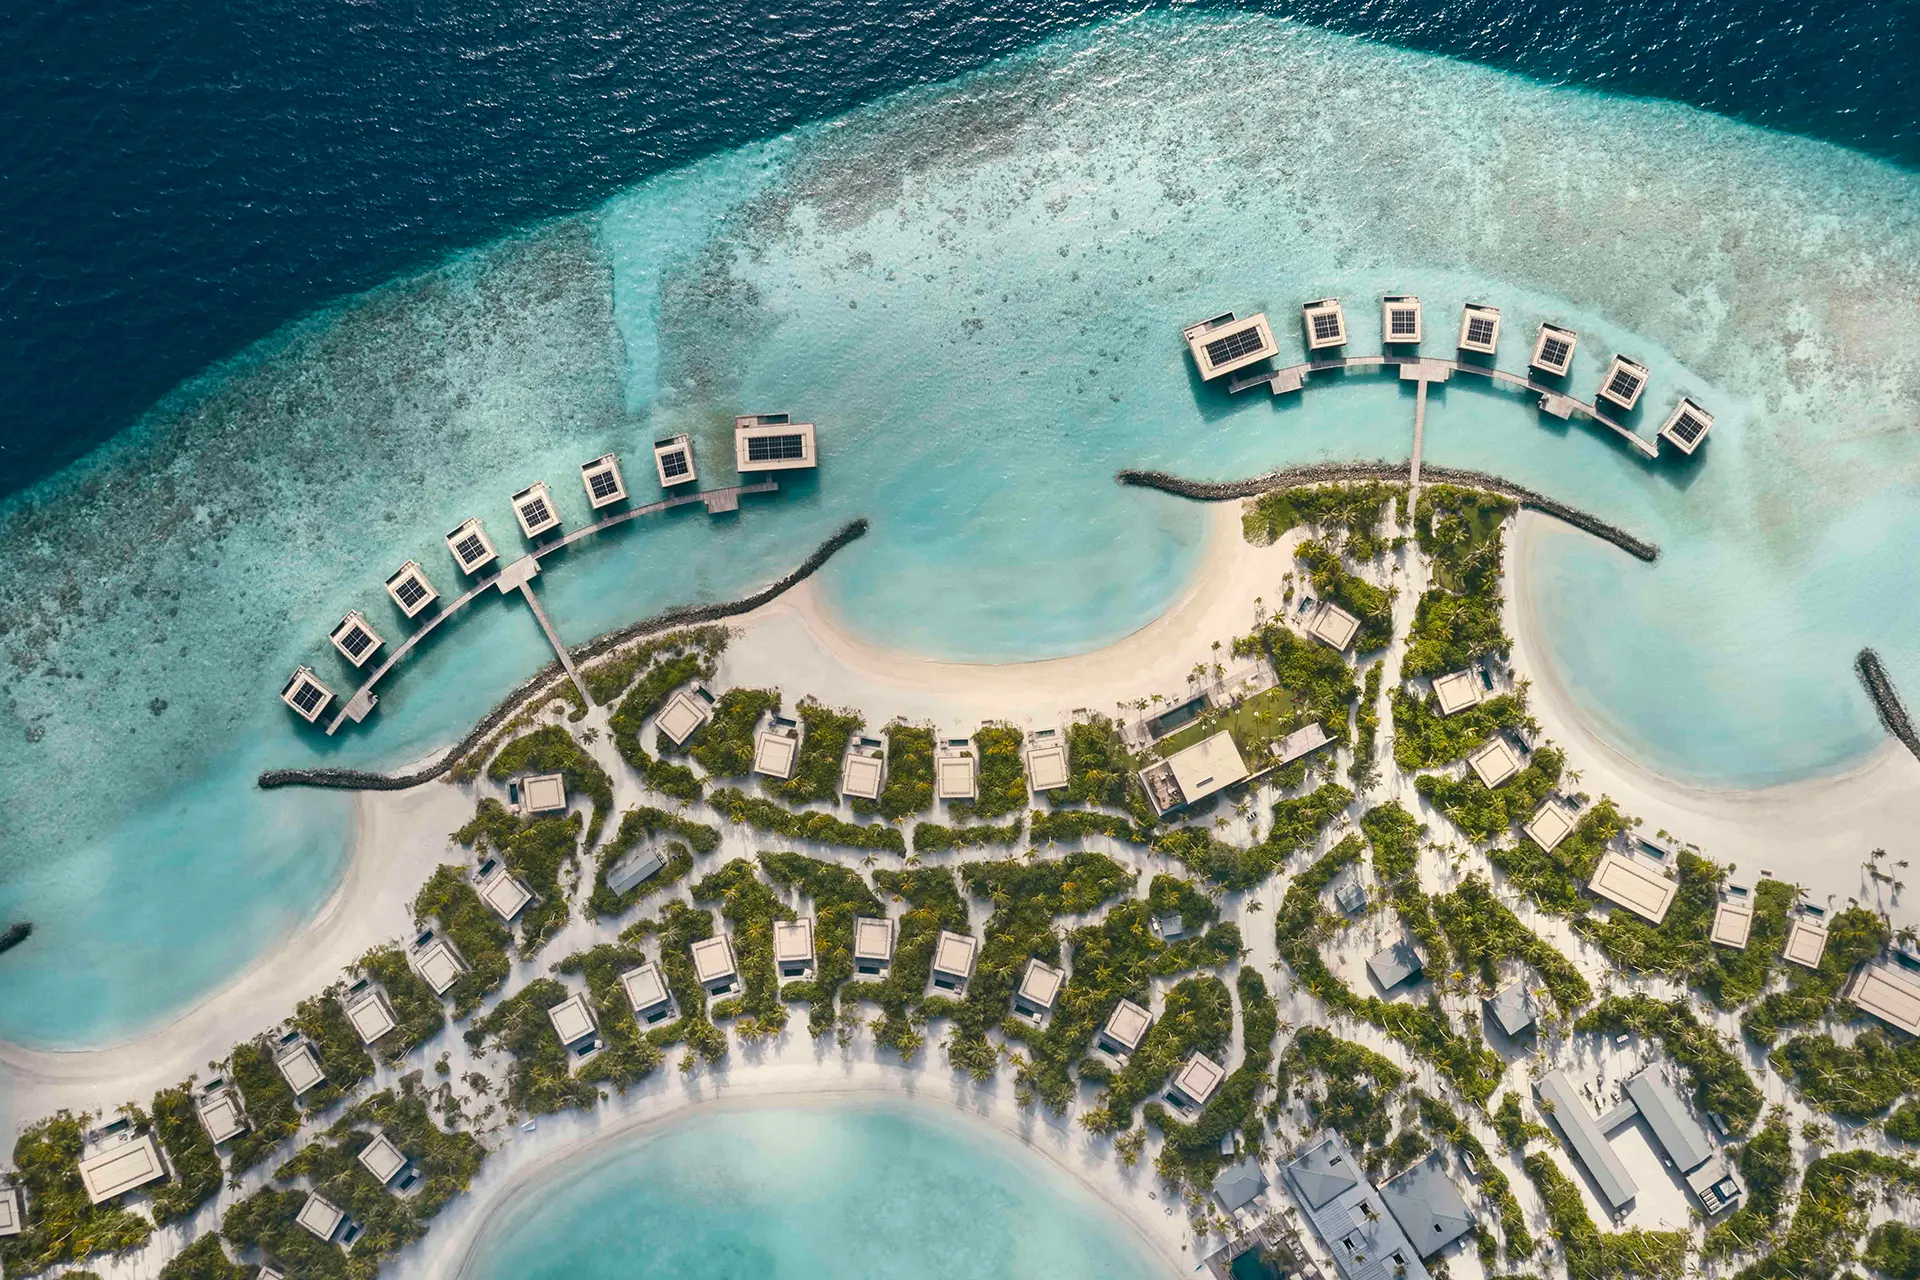 Luftaufnahme einer maledivischen Insel